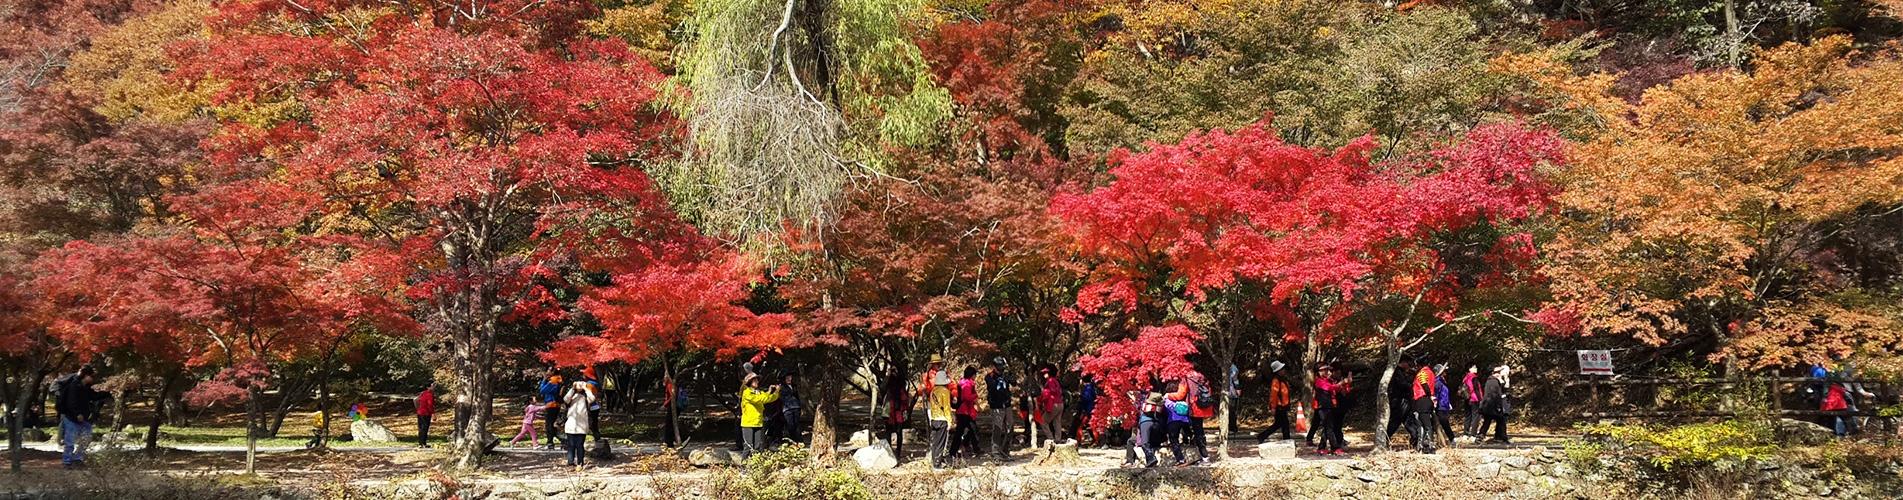 韓國1天遊·內藏山國立公園 X 千年內藏寺 X 韓牛料理午餐